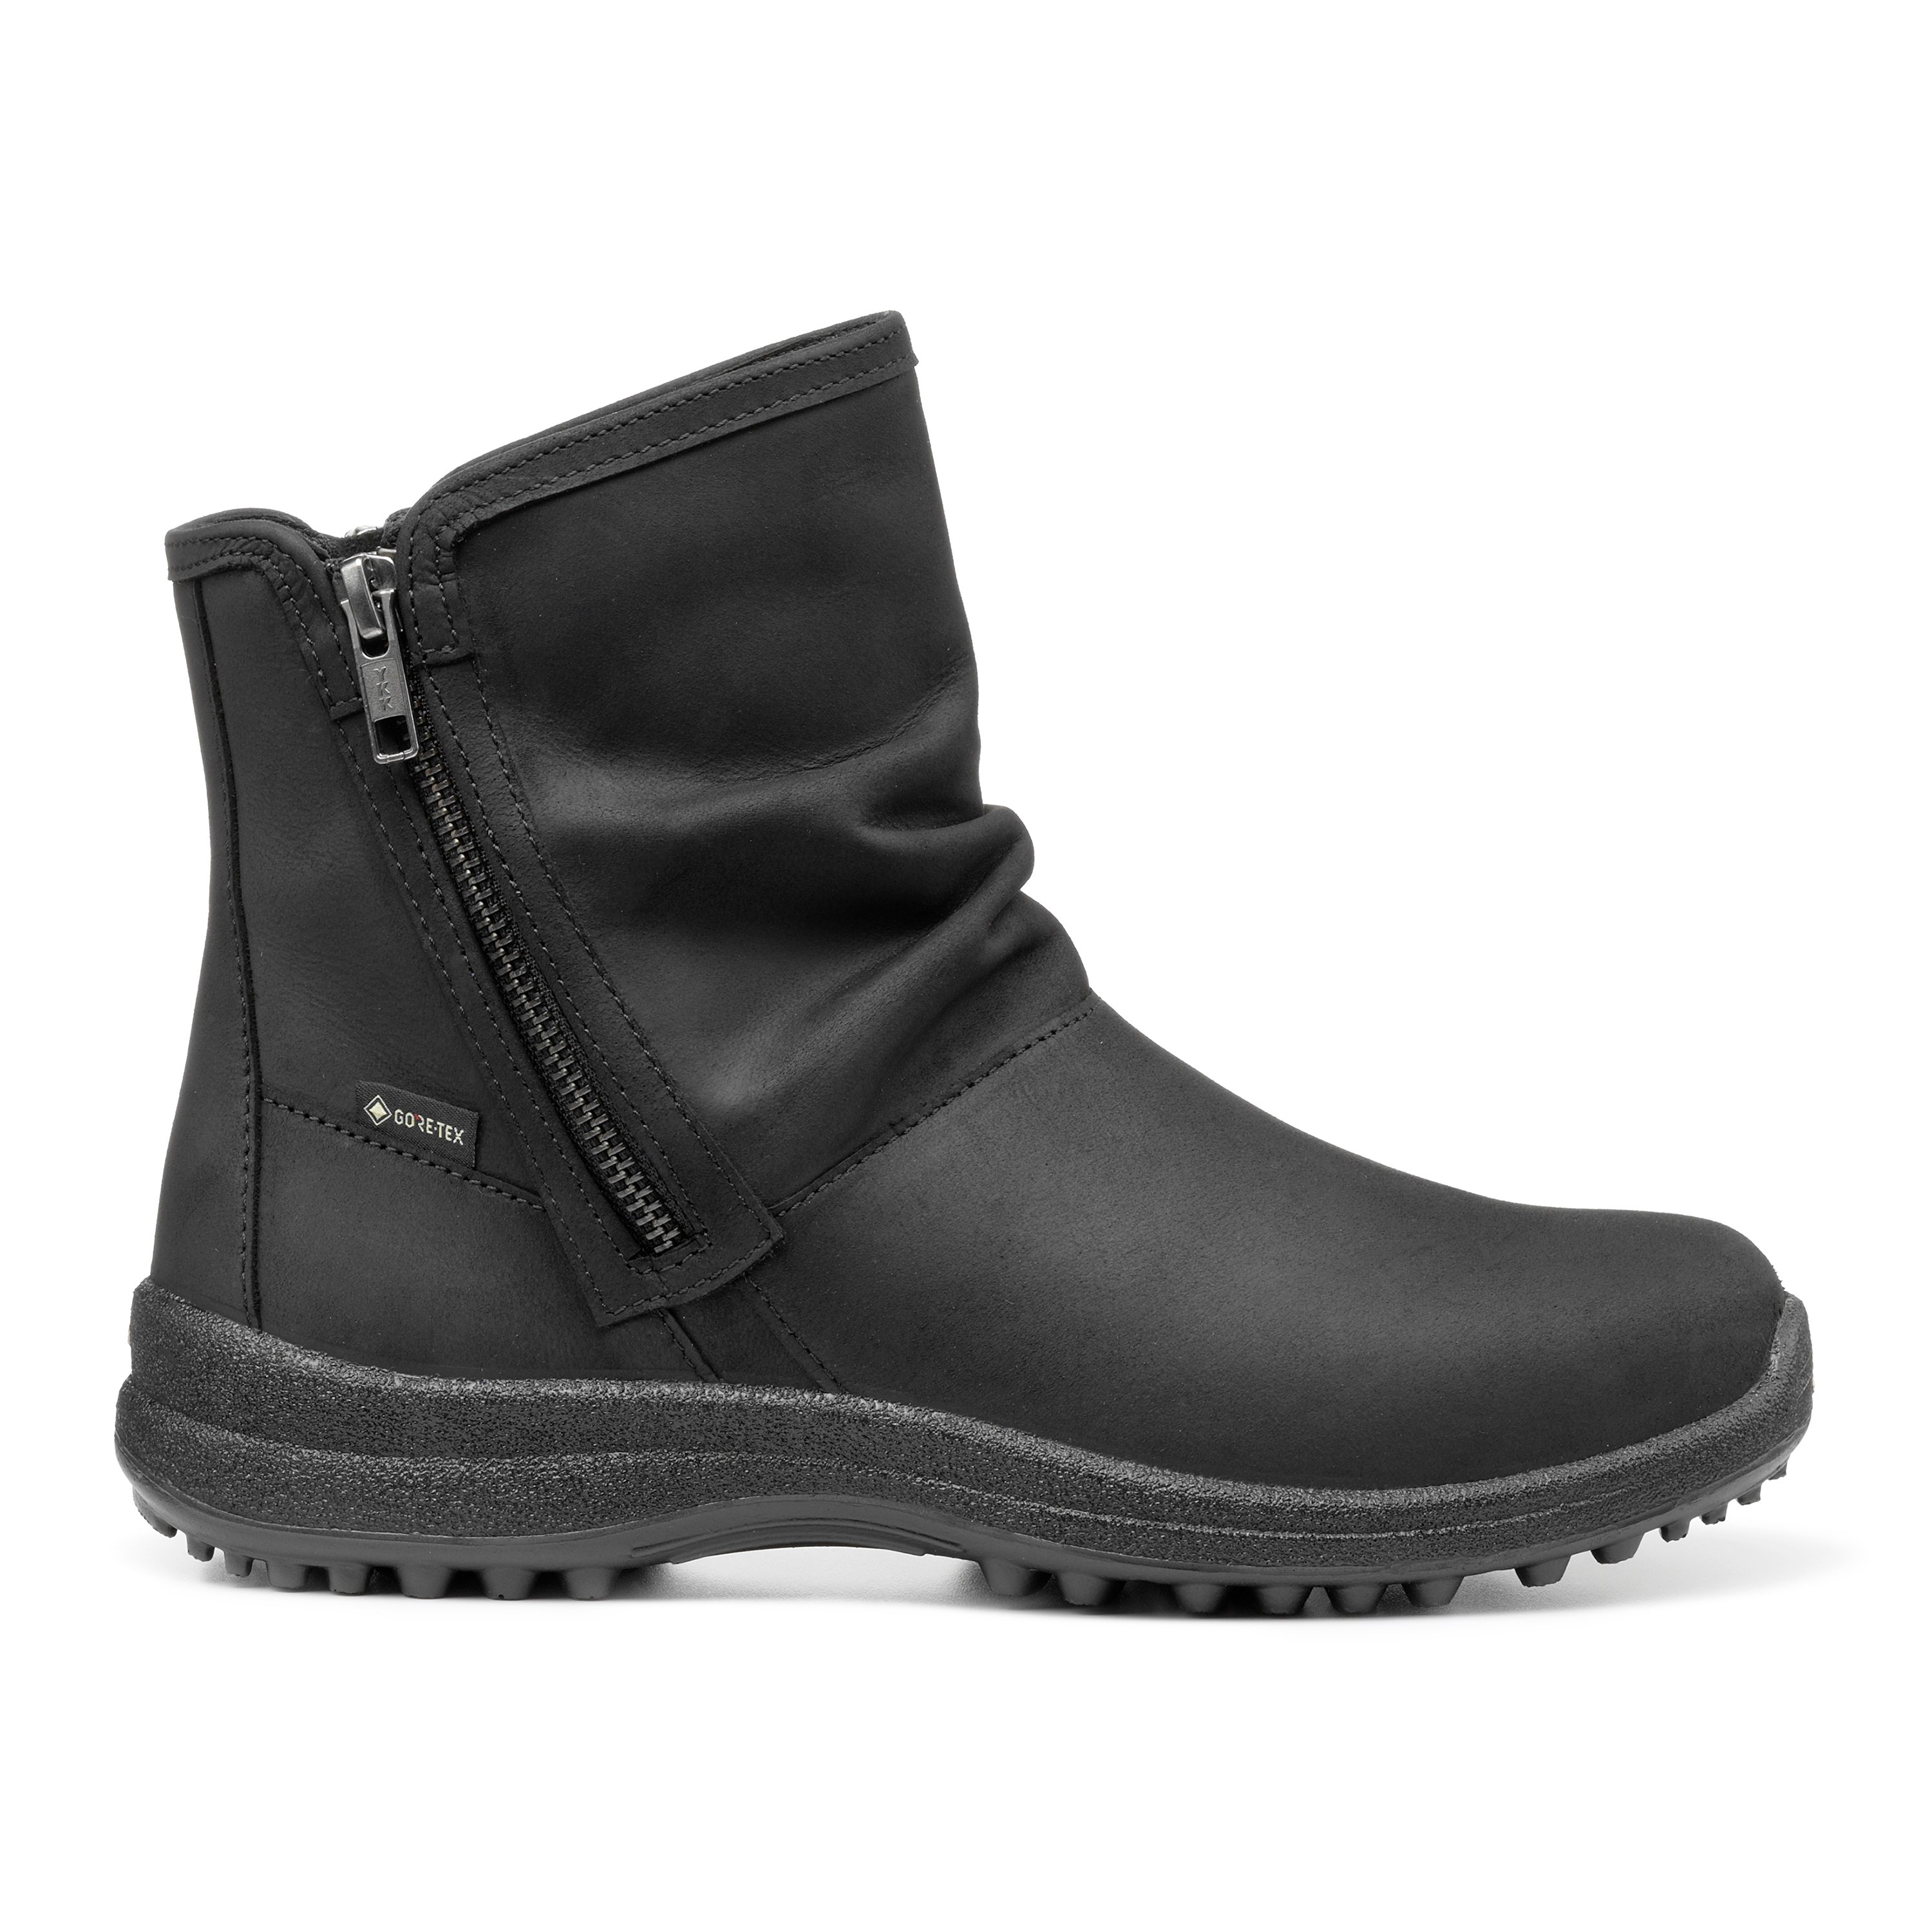 Black | Terrain GTX Boots |Hotter UK